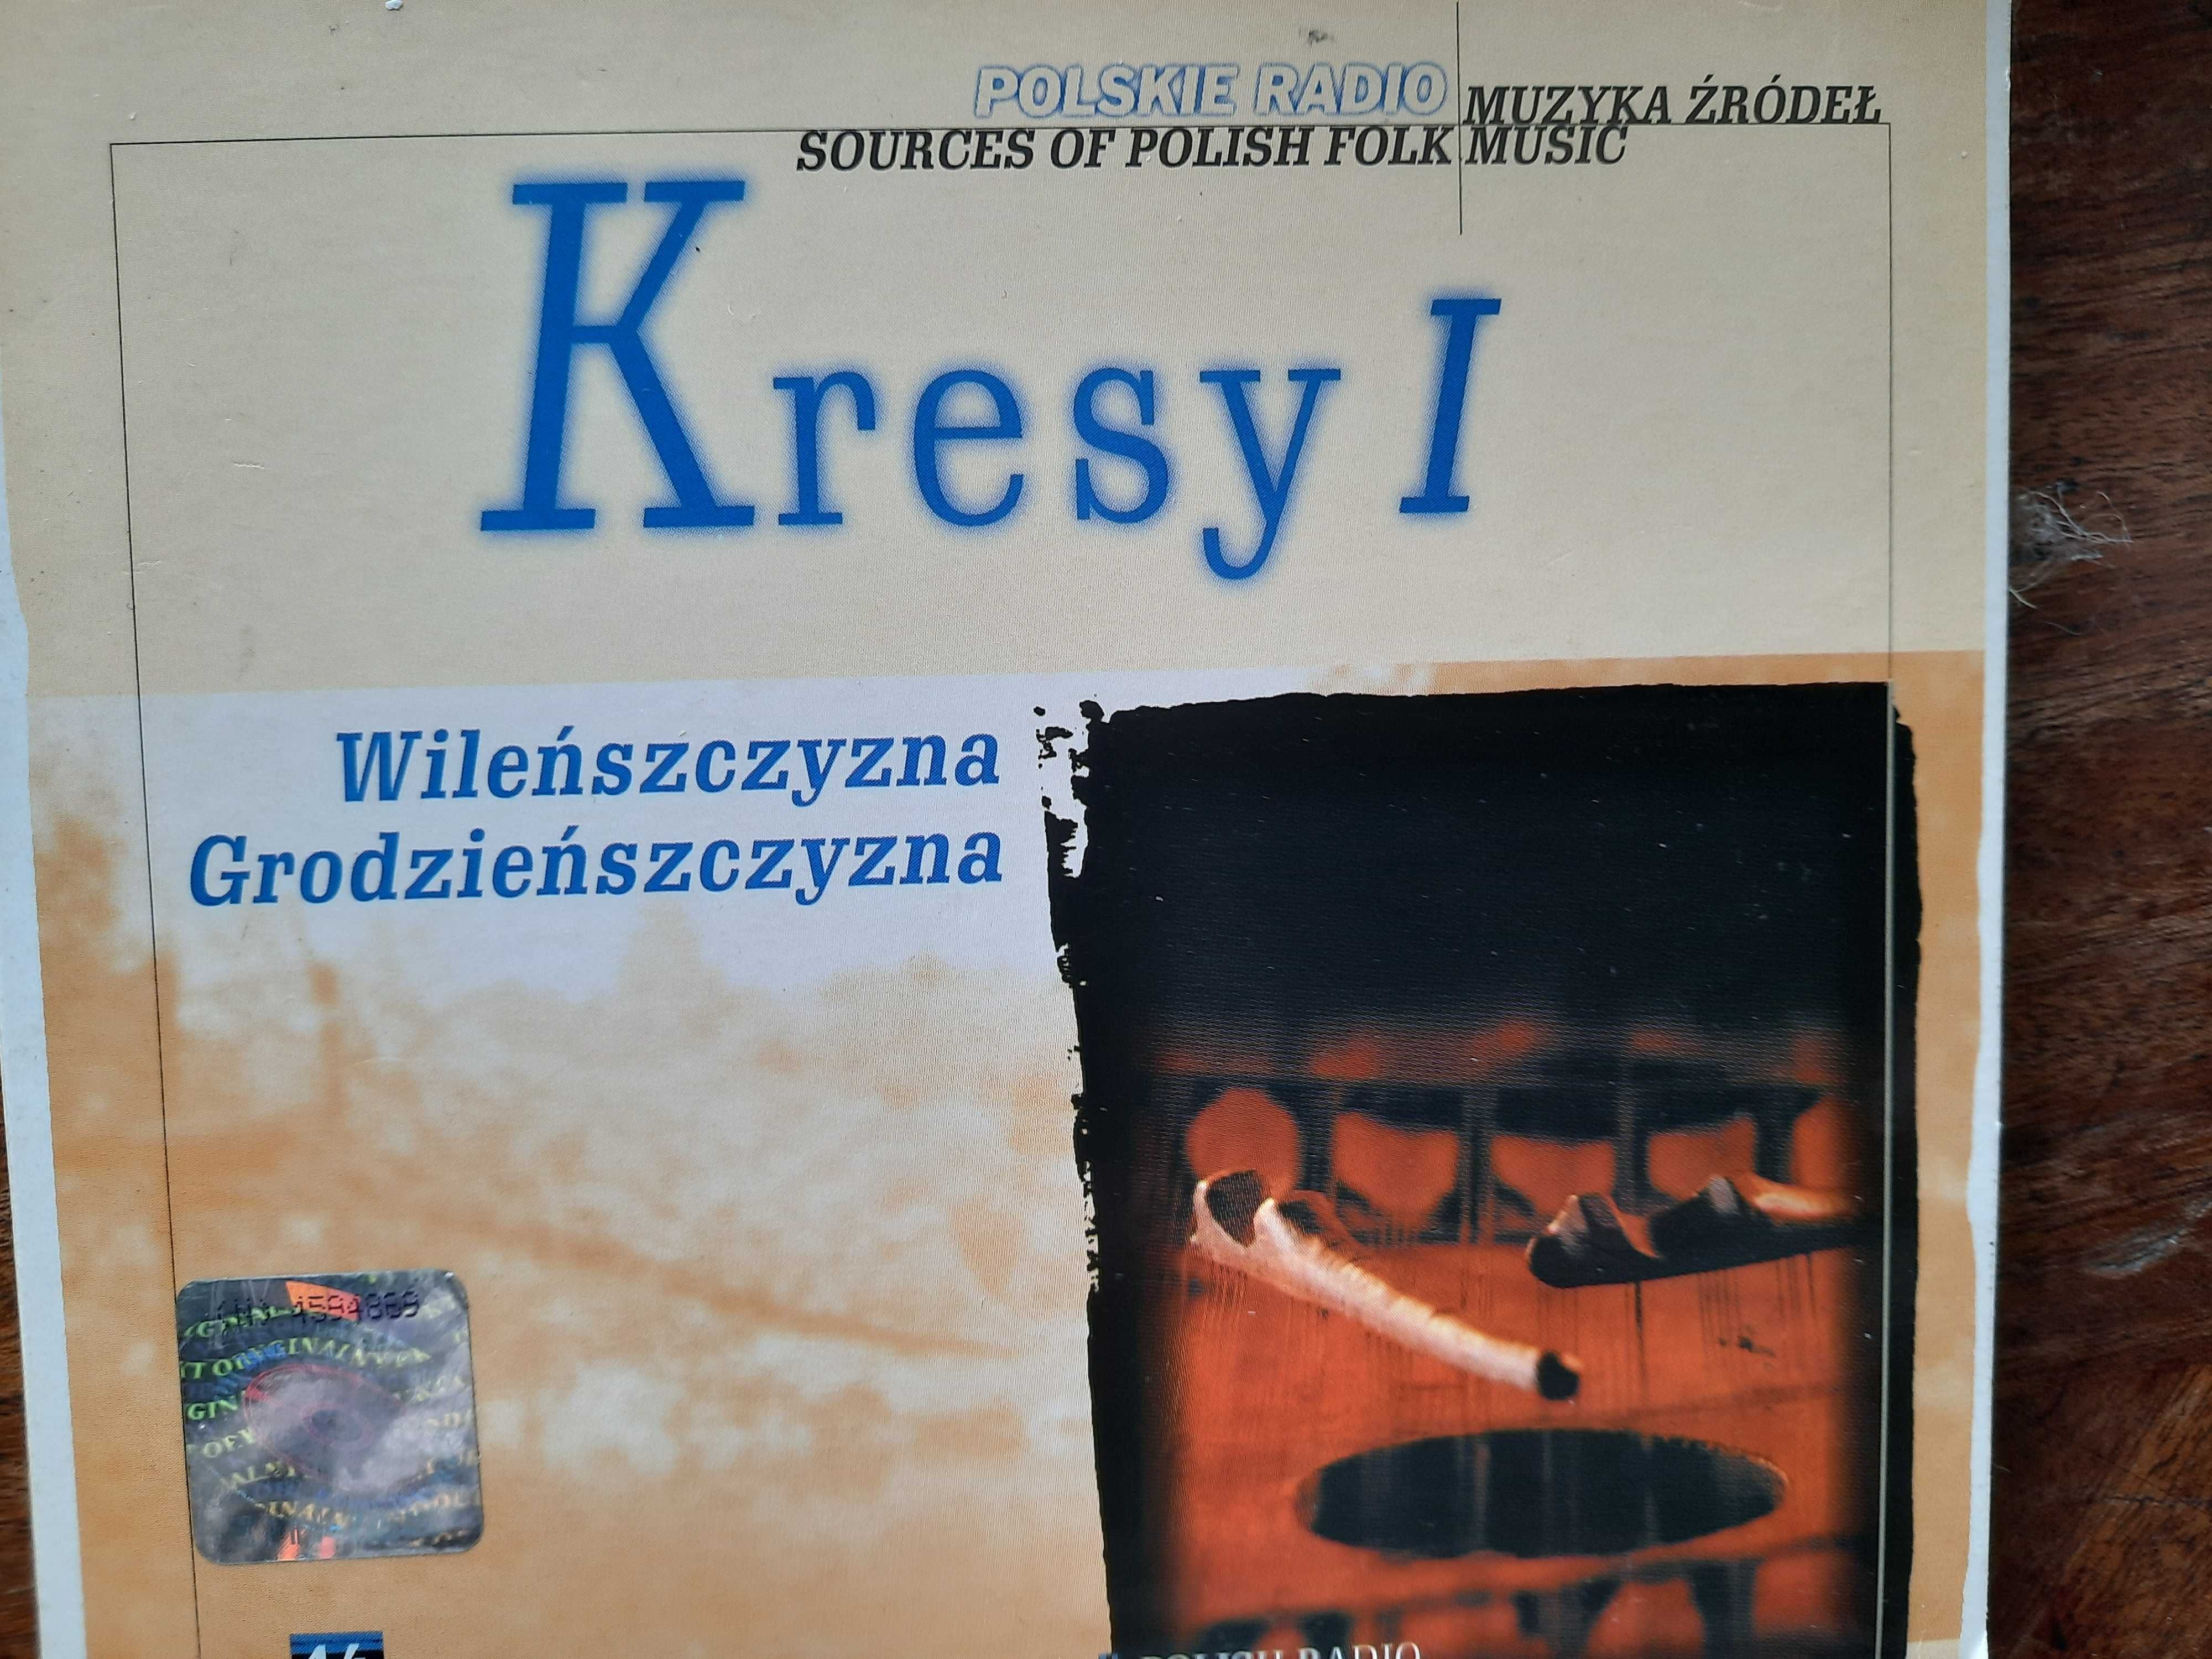 Muzyka źródeł - komplet płyt z różnych regionów Polski